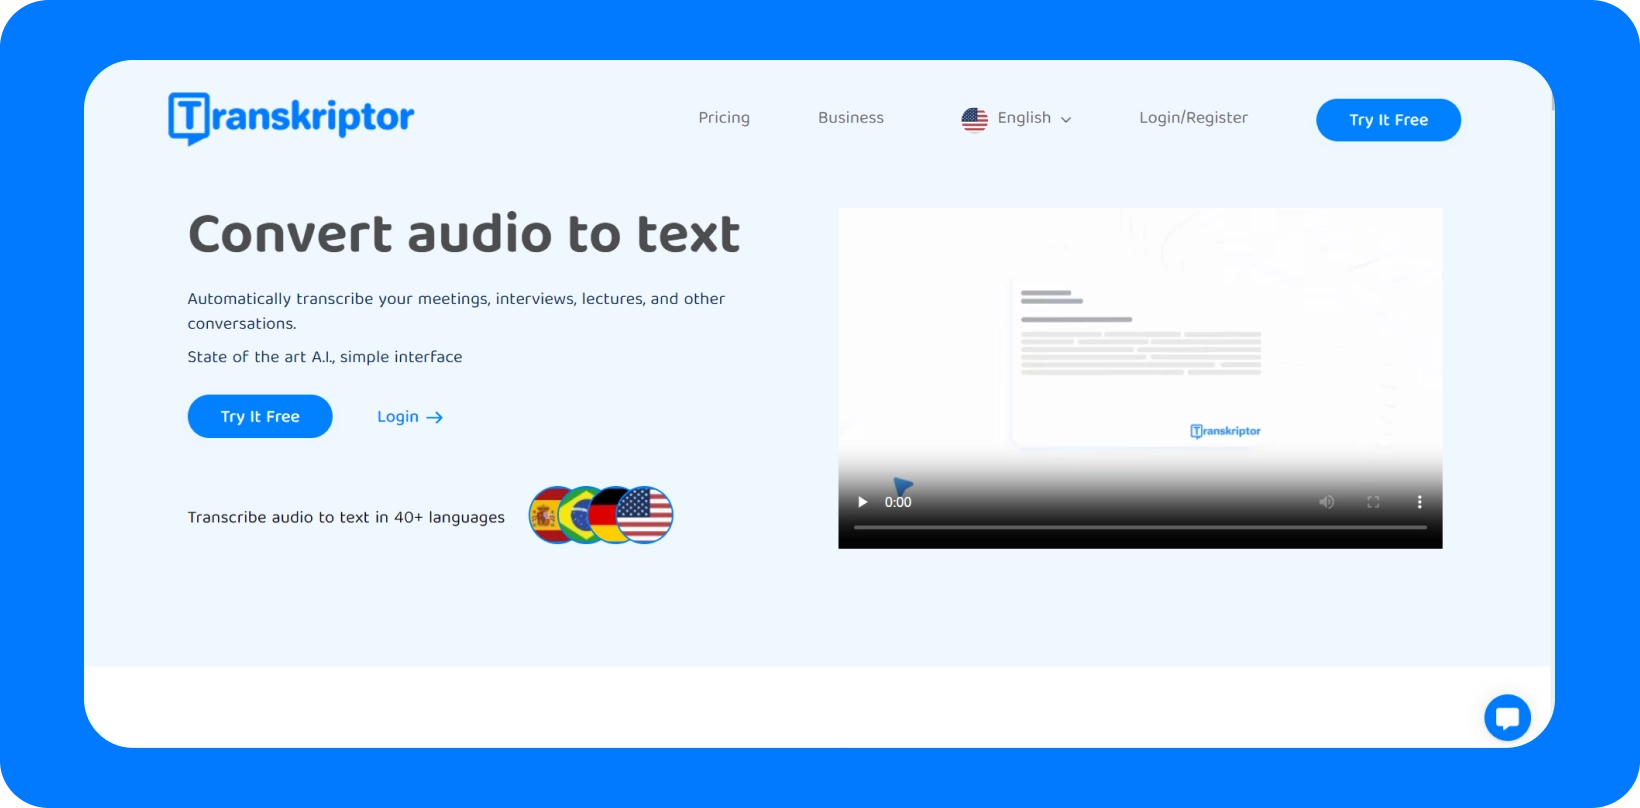 Transkriptor interfejs koji pokazuje uslugu "Konvertuj zvuk u tekst" sa višejezionom podrškom.